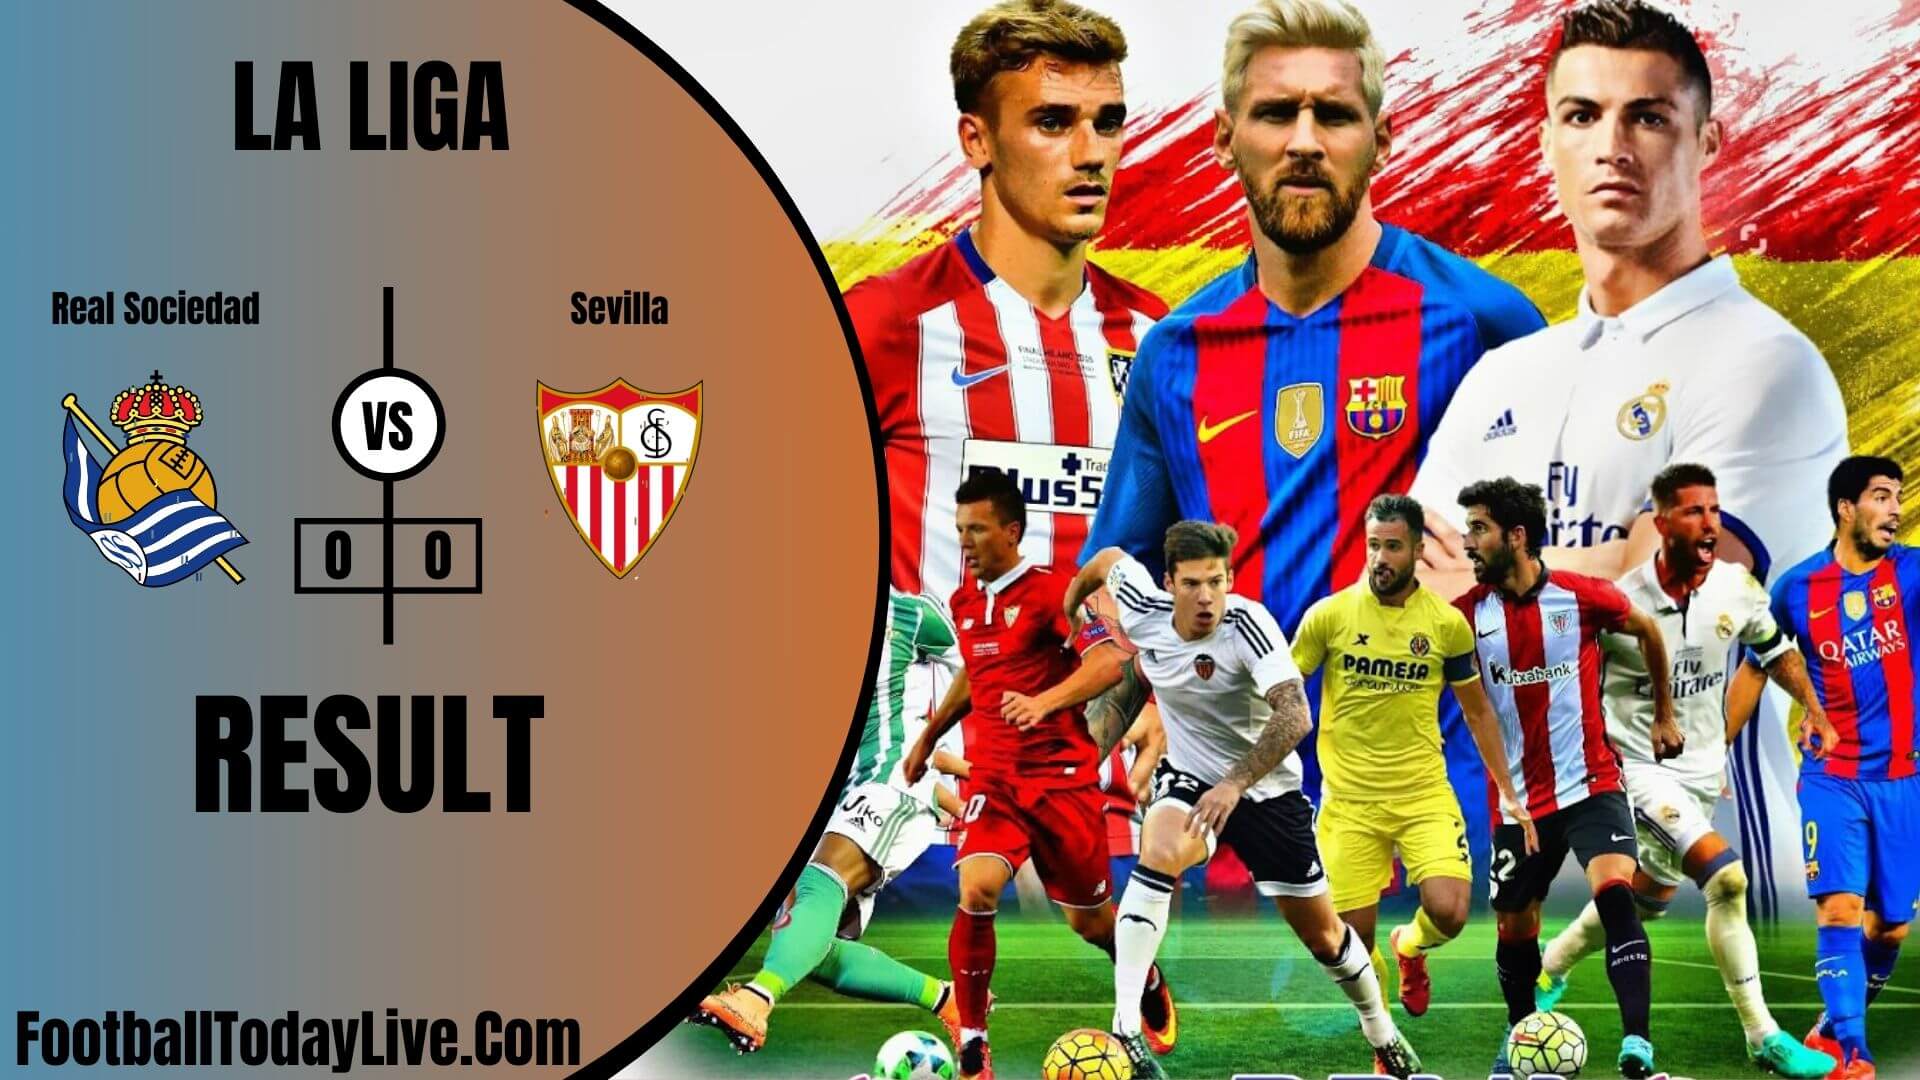 Real Sociedad Vs Sevilla | La Liga Week 37 Result 2020